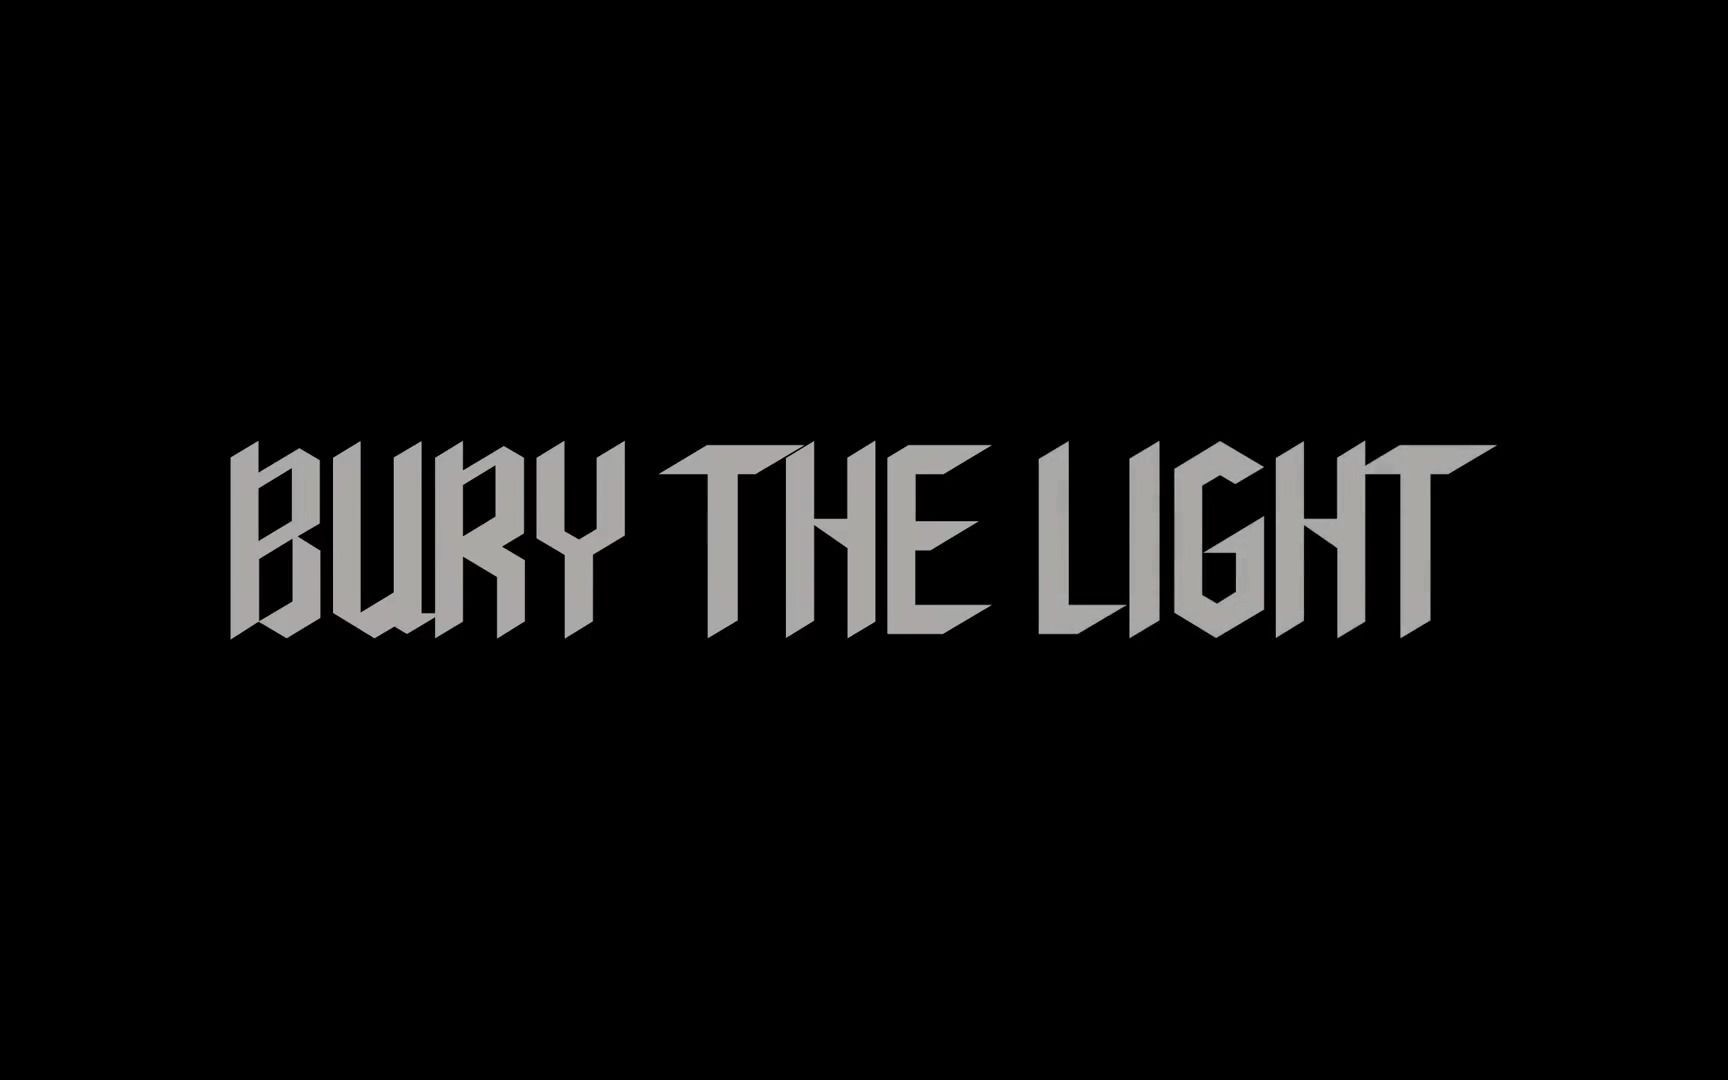 【油管大神剪辑】Sadwich-Bury the light 鬼泣5